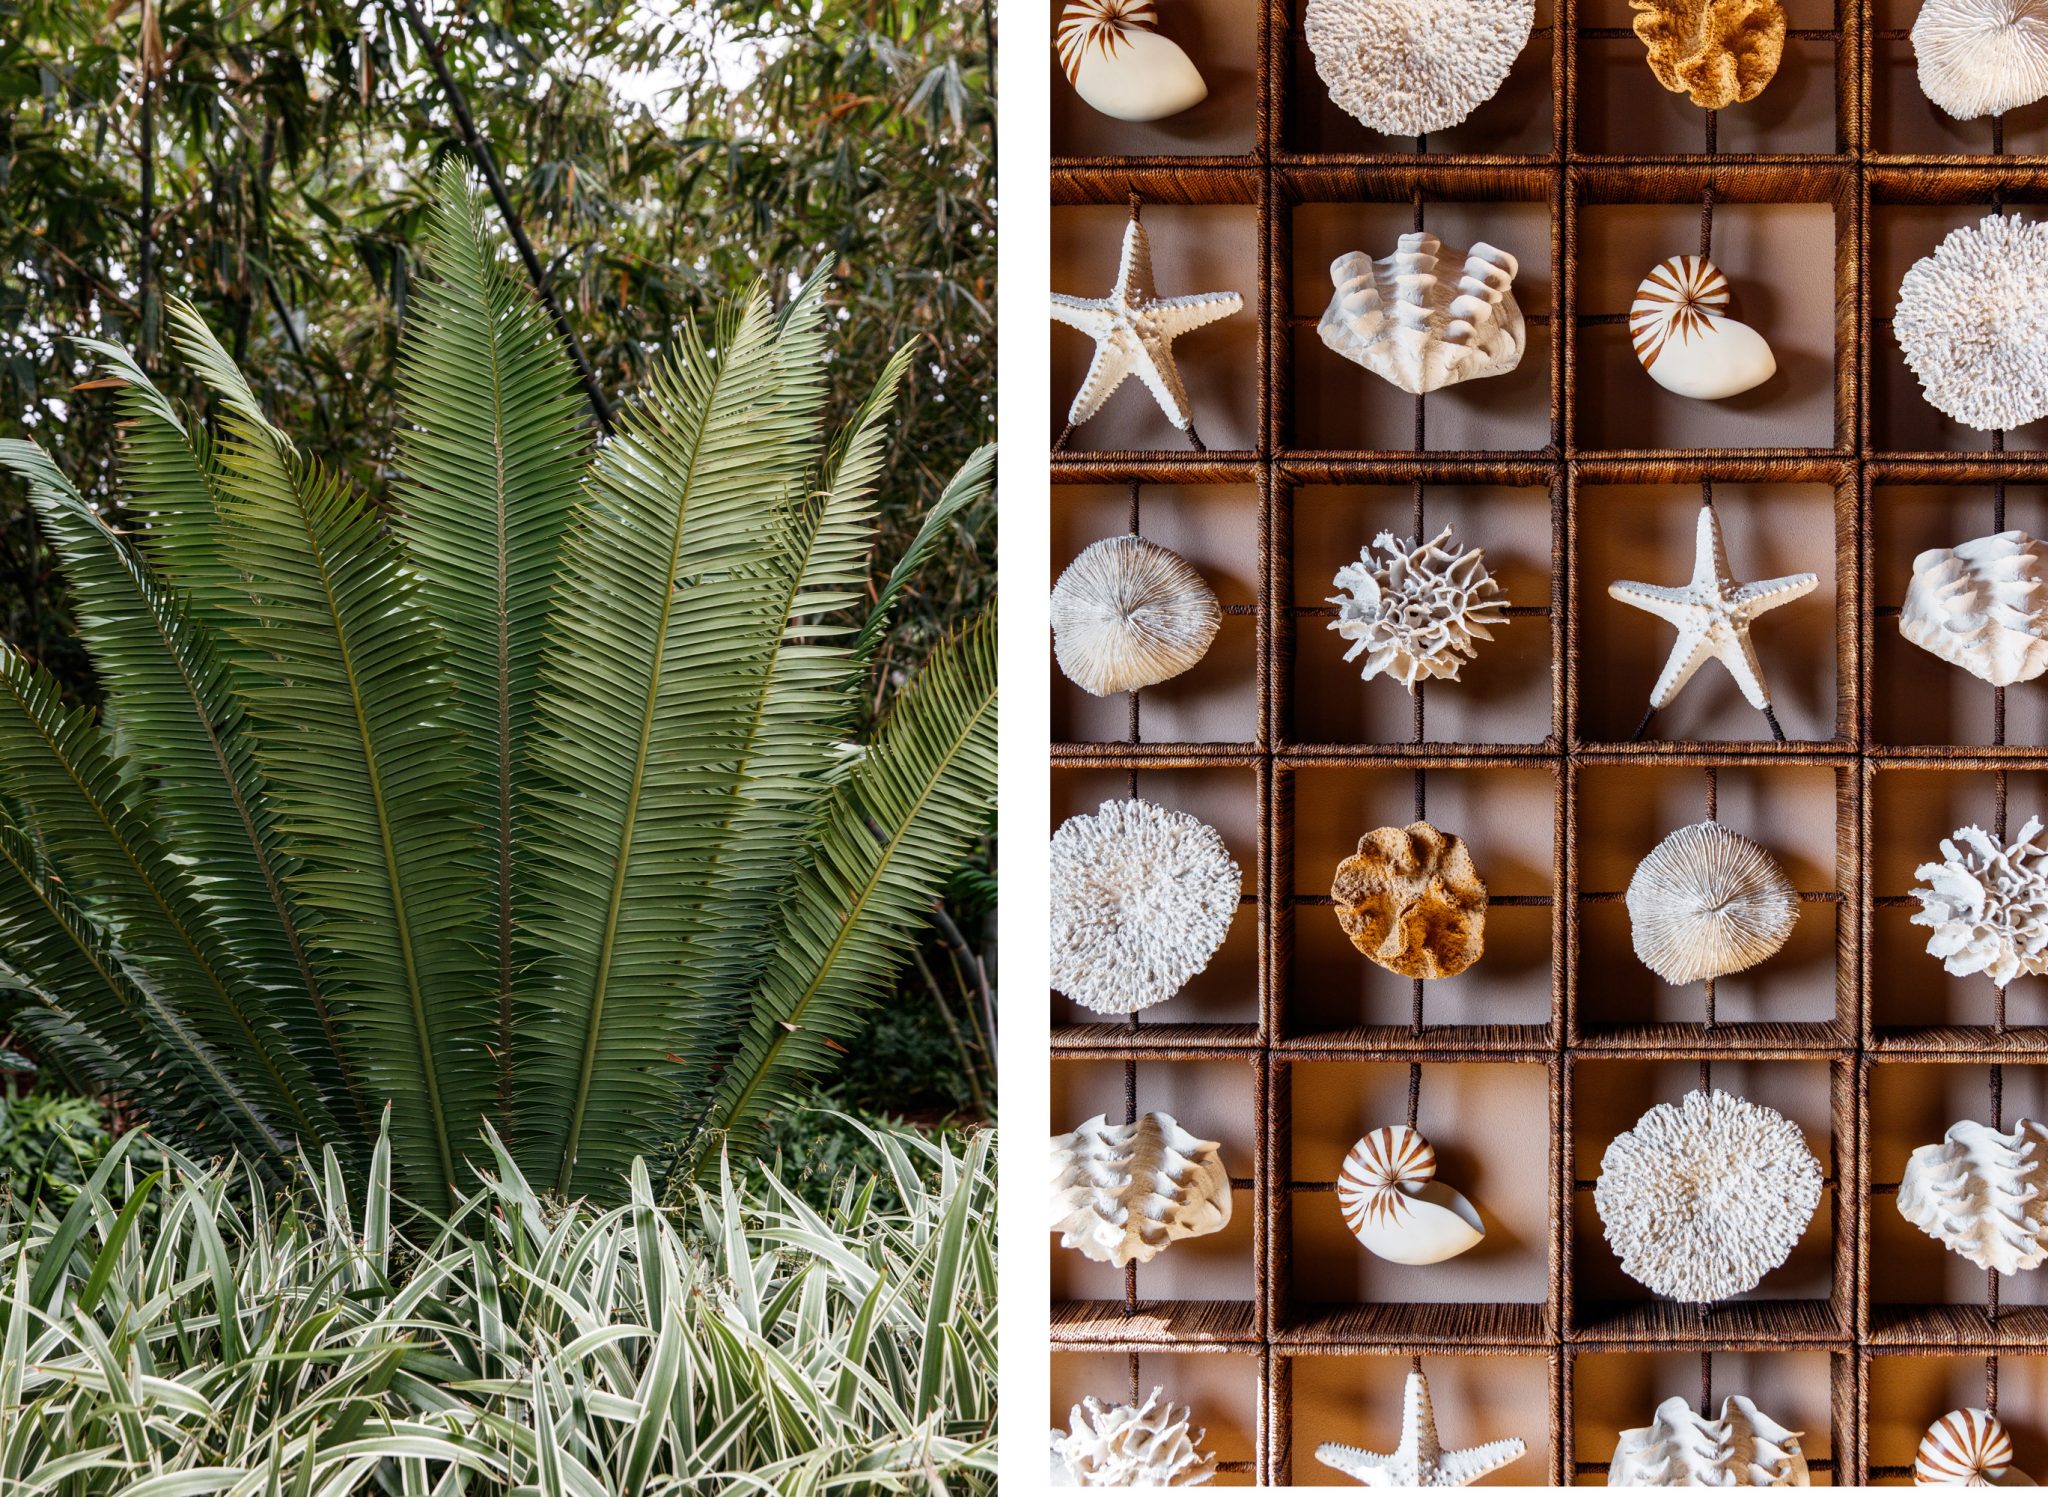 lanai palm fronds, seashell and starfish comparison